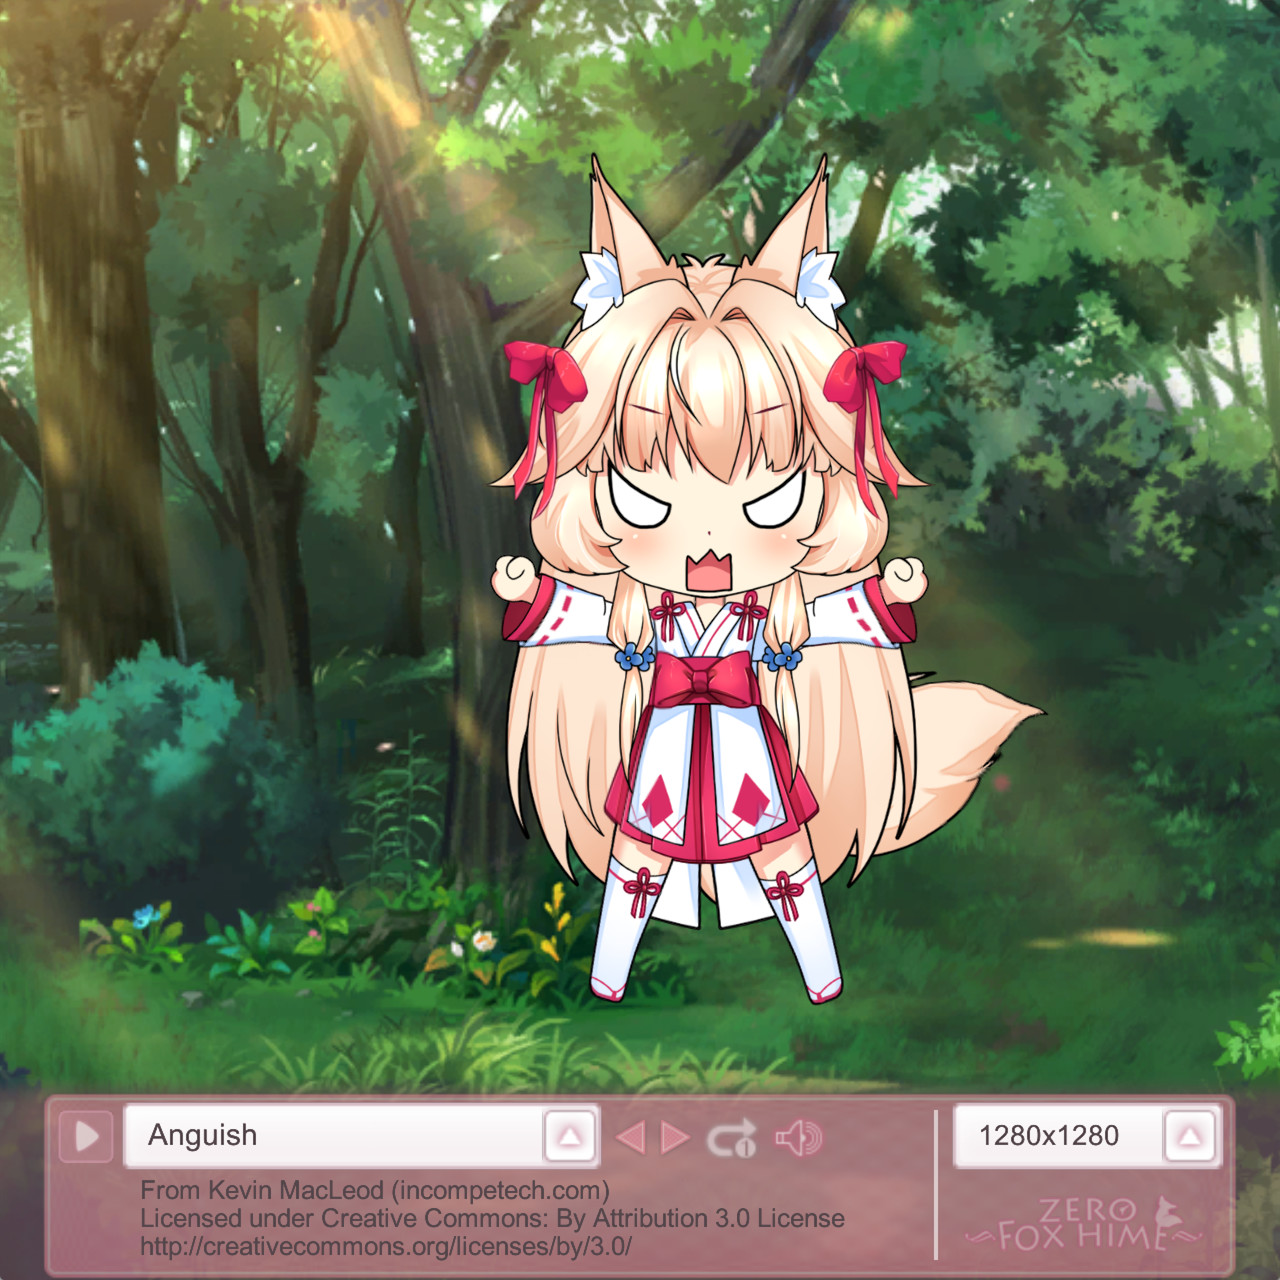 Fox Hime Zero - MoriChan screenshot